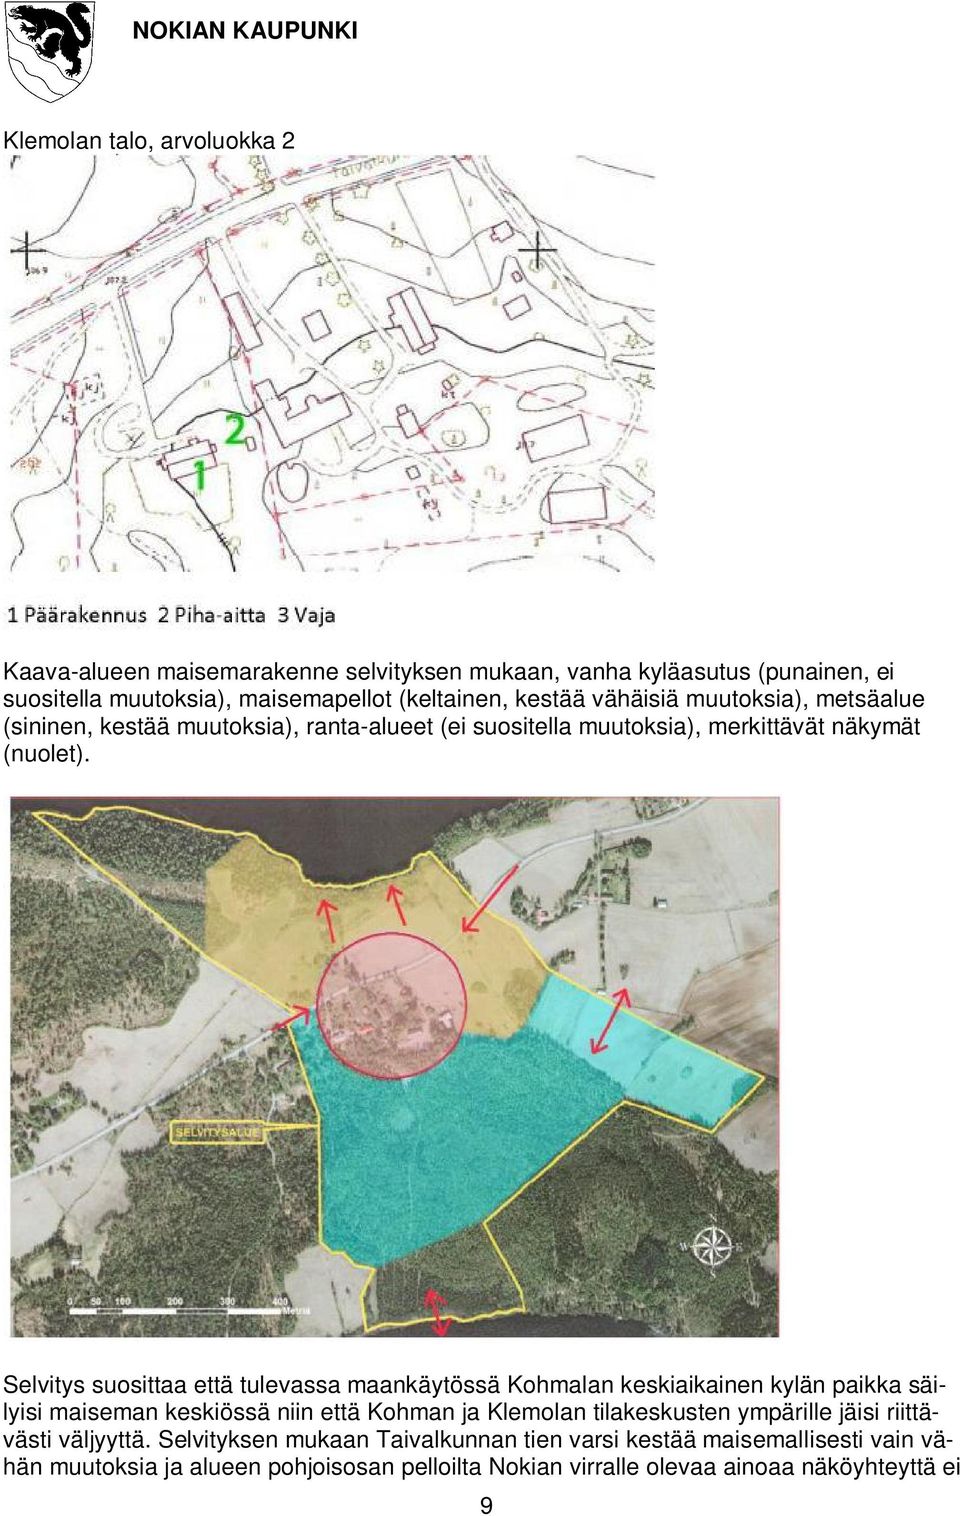 Selvitys suosittaa että tulevassa maankäytössä Kohmalan keskiaikainen kylän paikka säilyisi maiseman keskiössä niin että Kohman ja Klemolan tilakeskusten